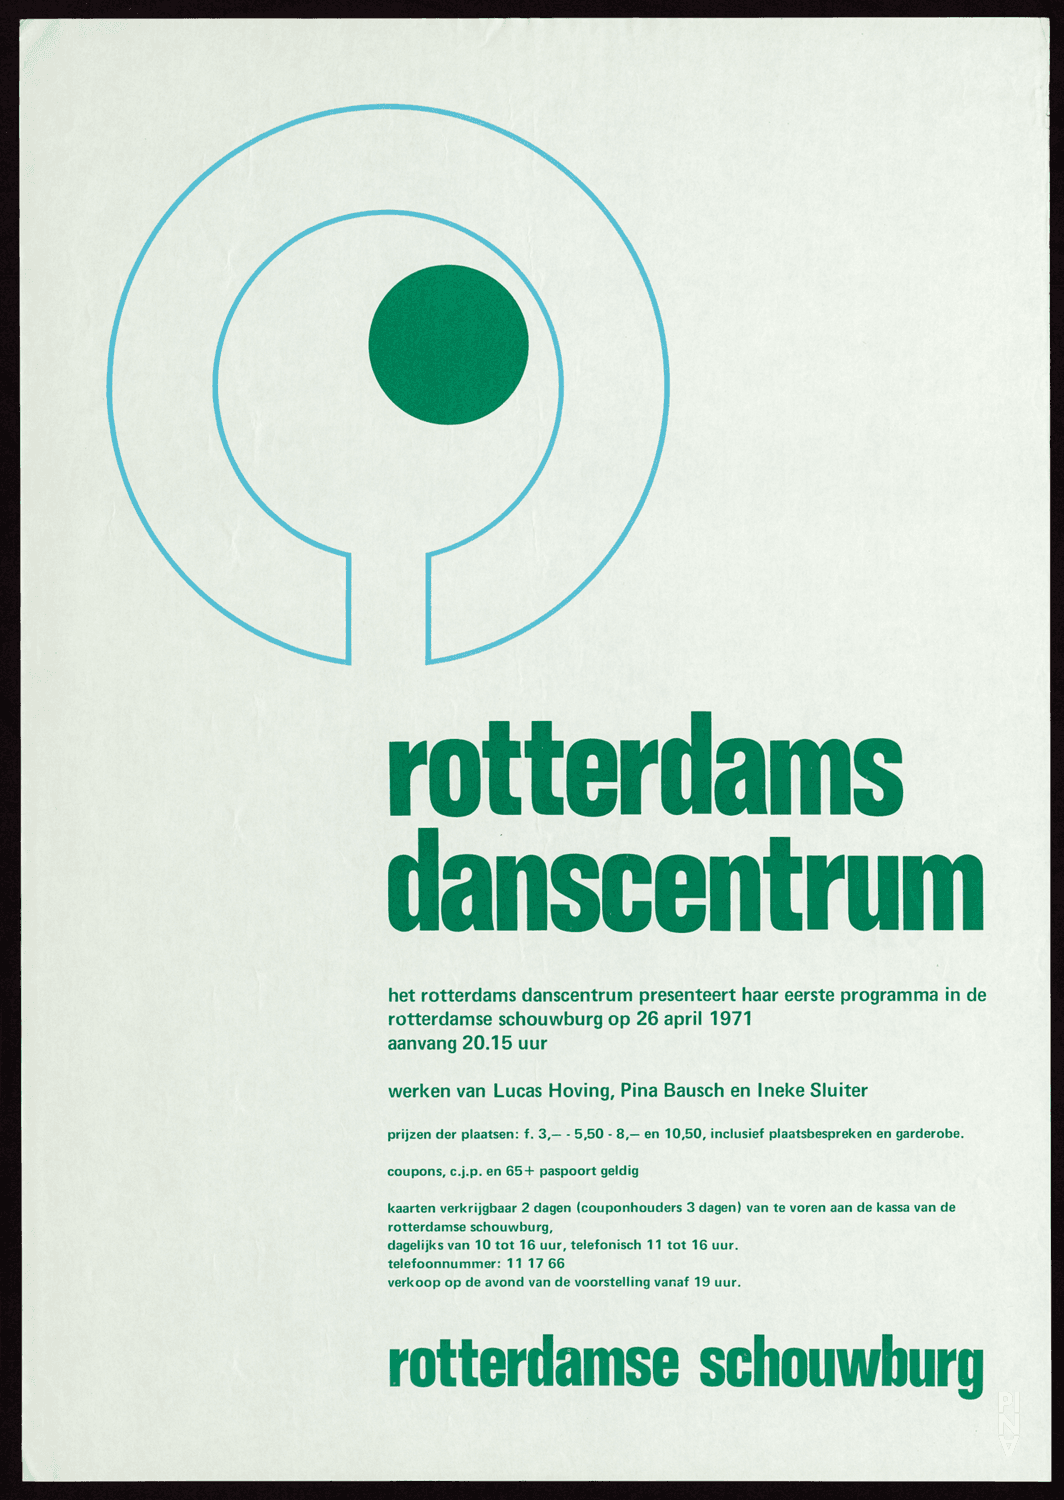 Poster for “Im Wind der Zeit” by Pina Bausch, “Aus der Wassermusik” by Ineke Sluiter and “Collage” by Lucas Hoving in Rotterdam, April 26, 1971